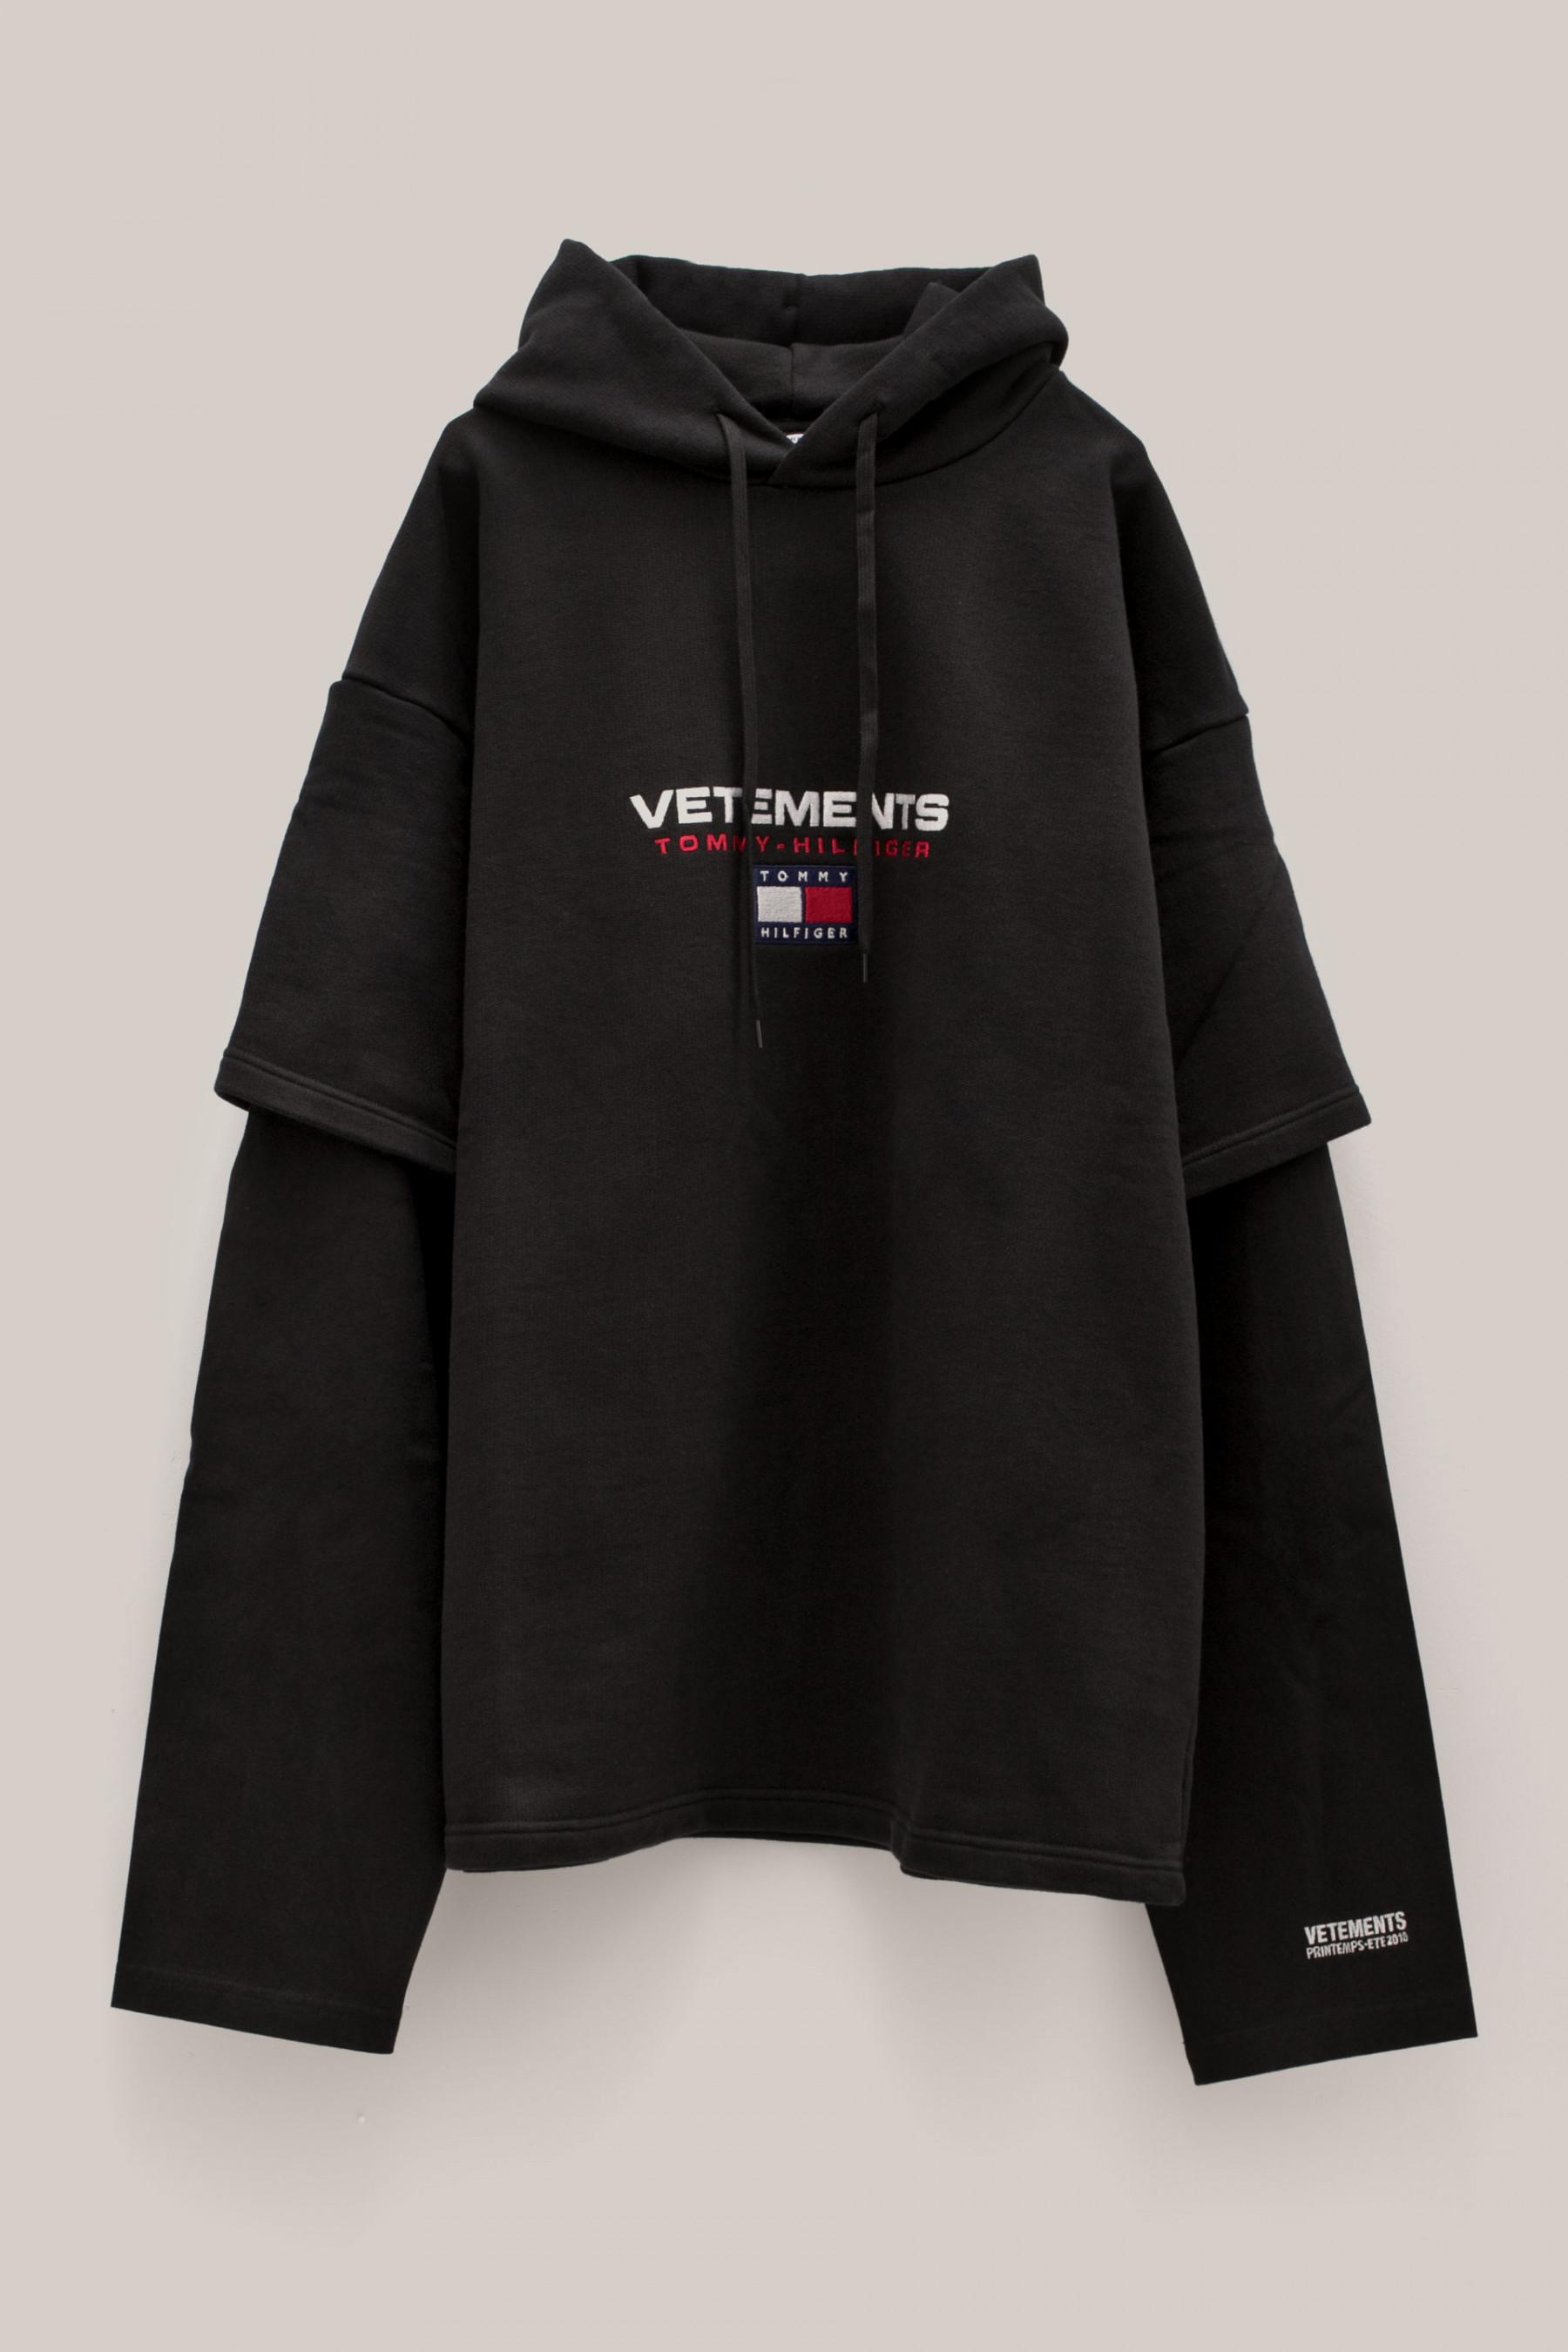 vetements tommy hilfiger hoodie black